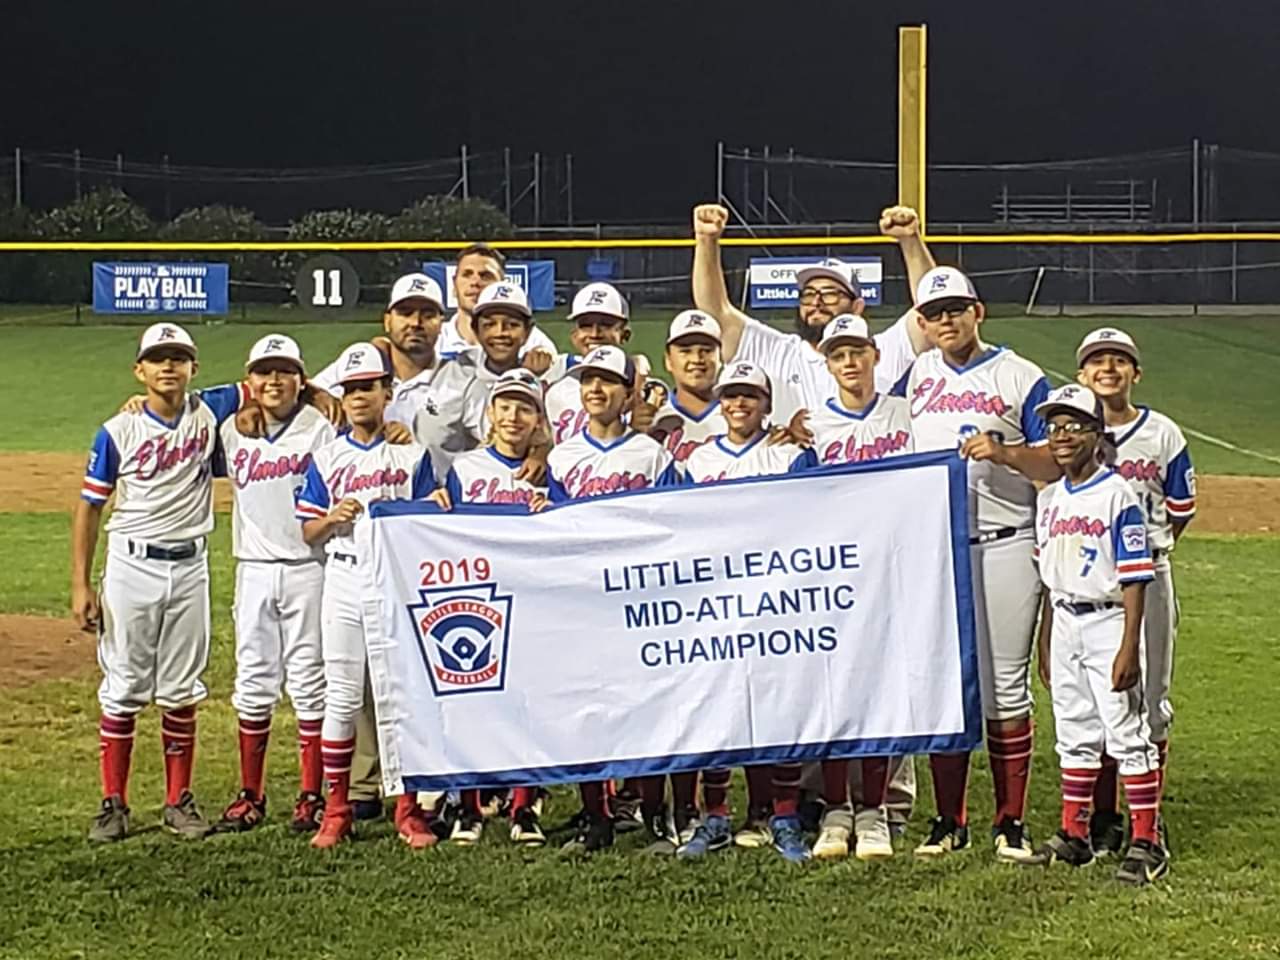 Mid-Atlantic Region - Little League